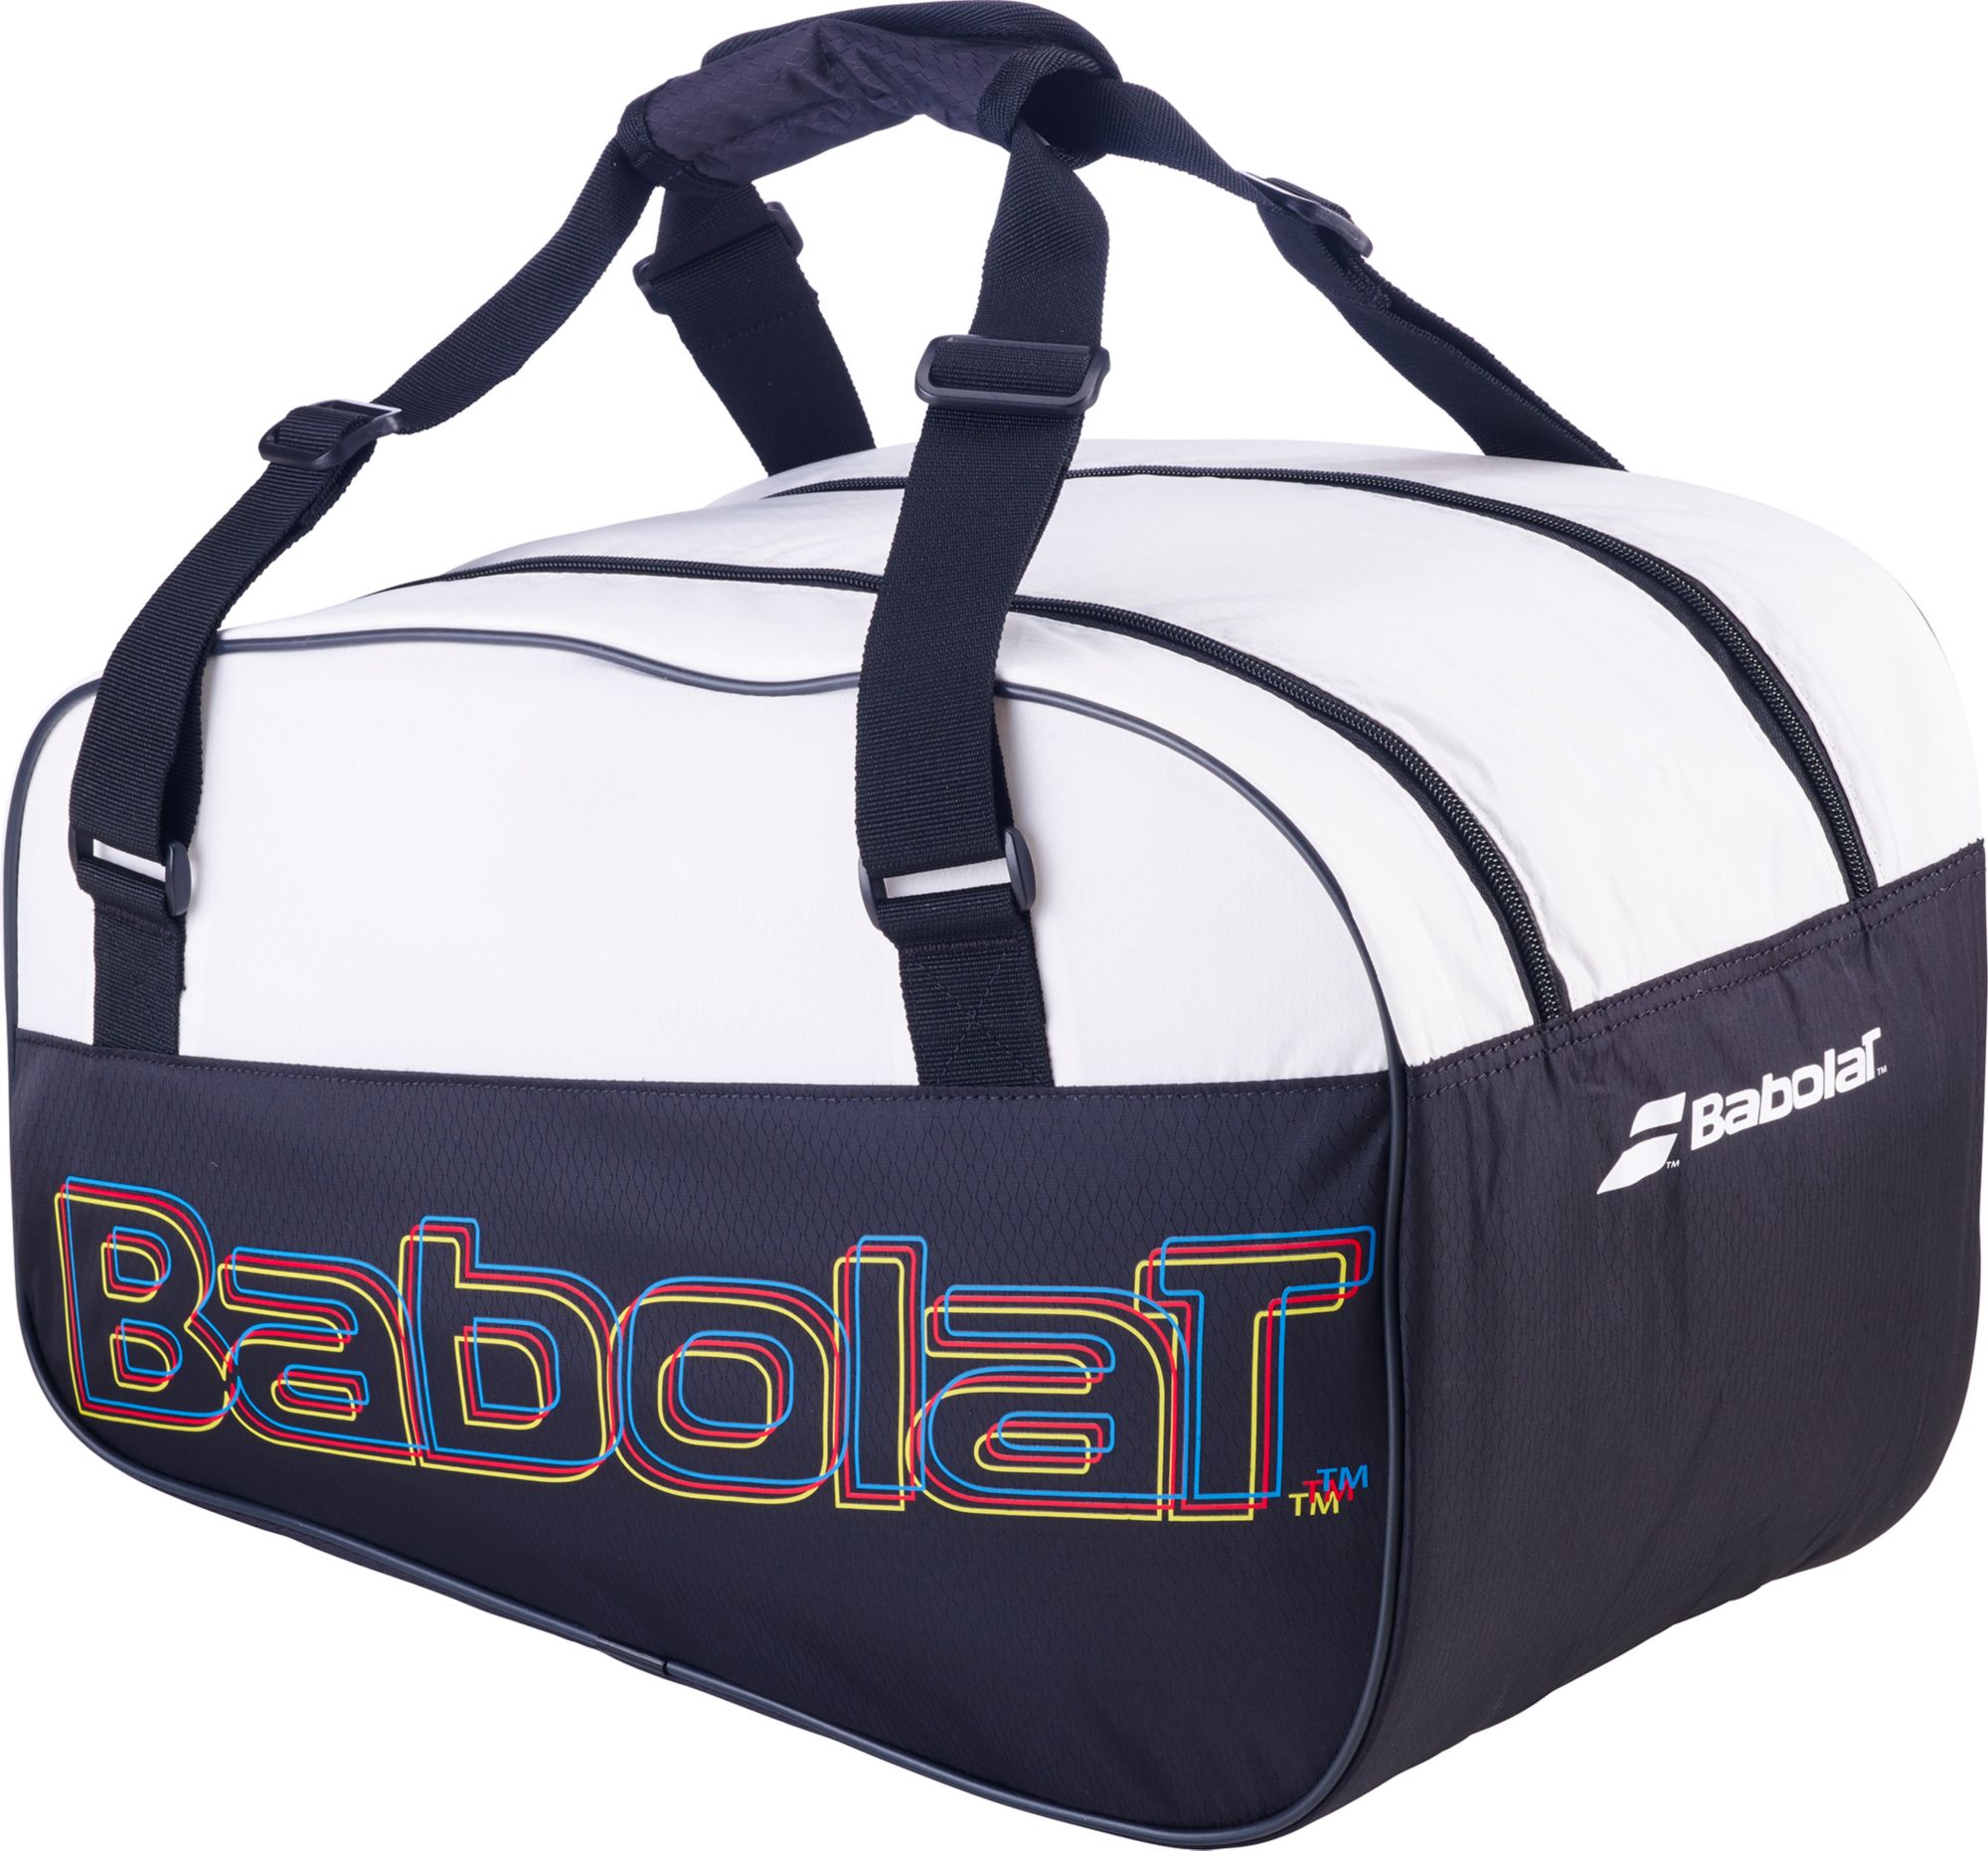 Babolat RH Lite Padel Tennis Bag